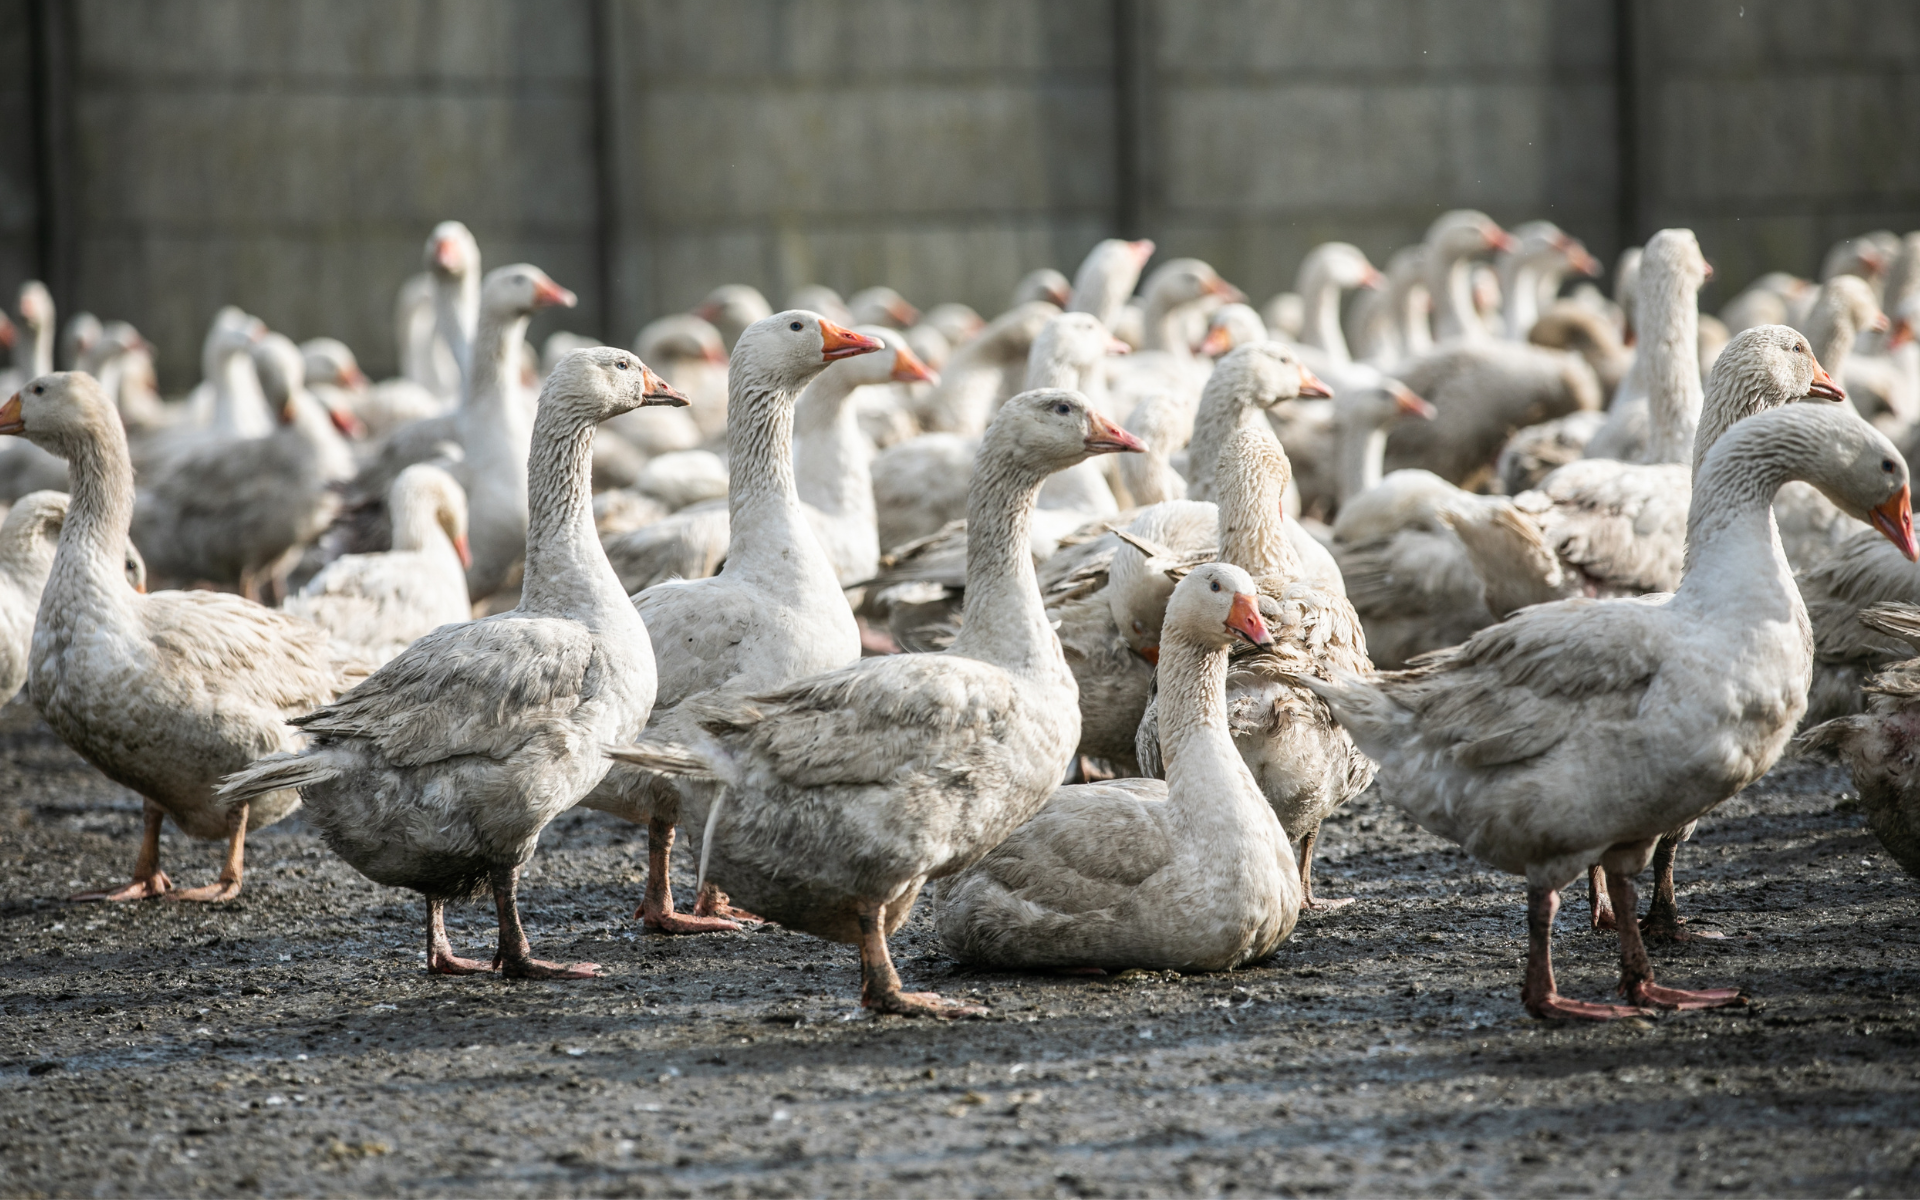 un grupo de gansos en una granja industrial.